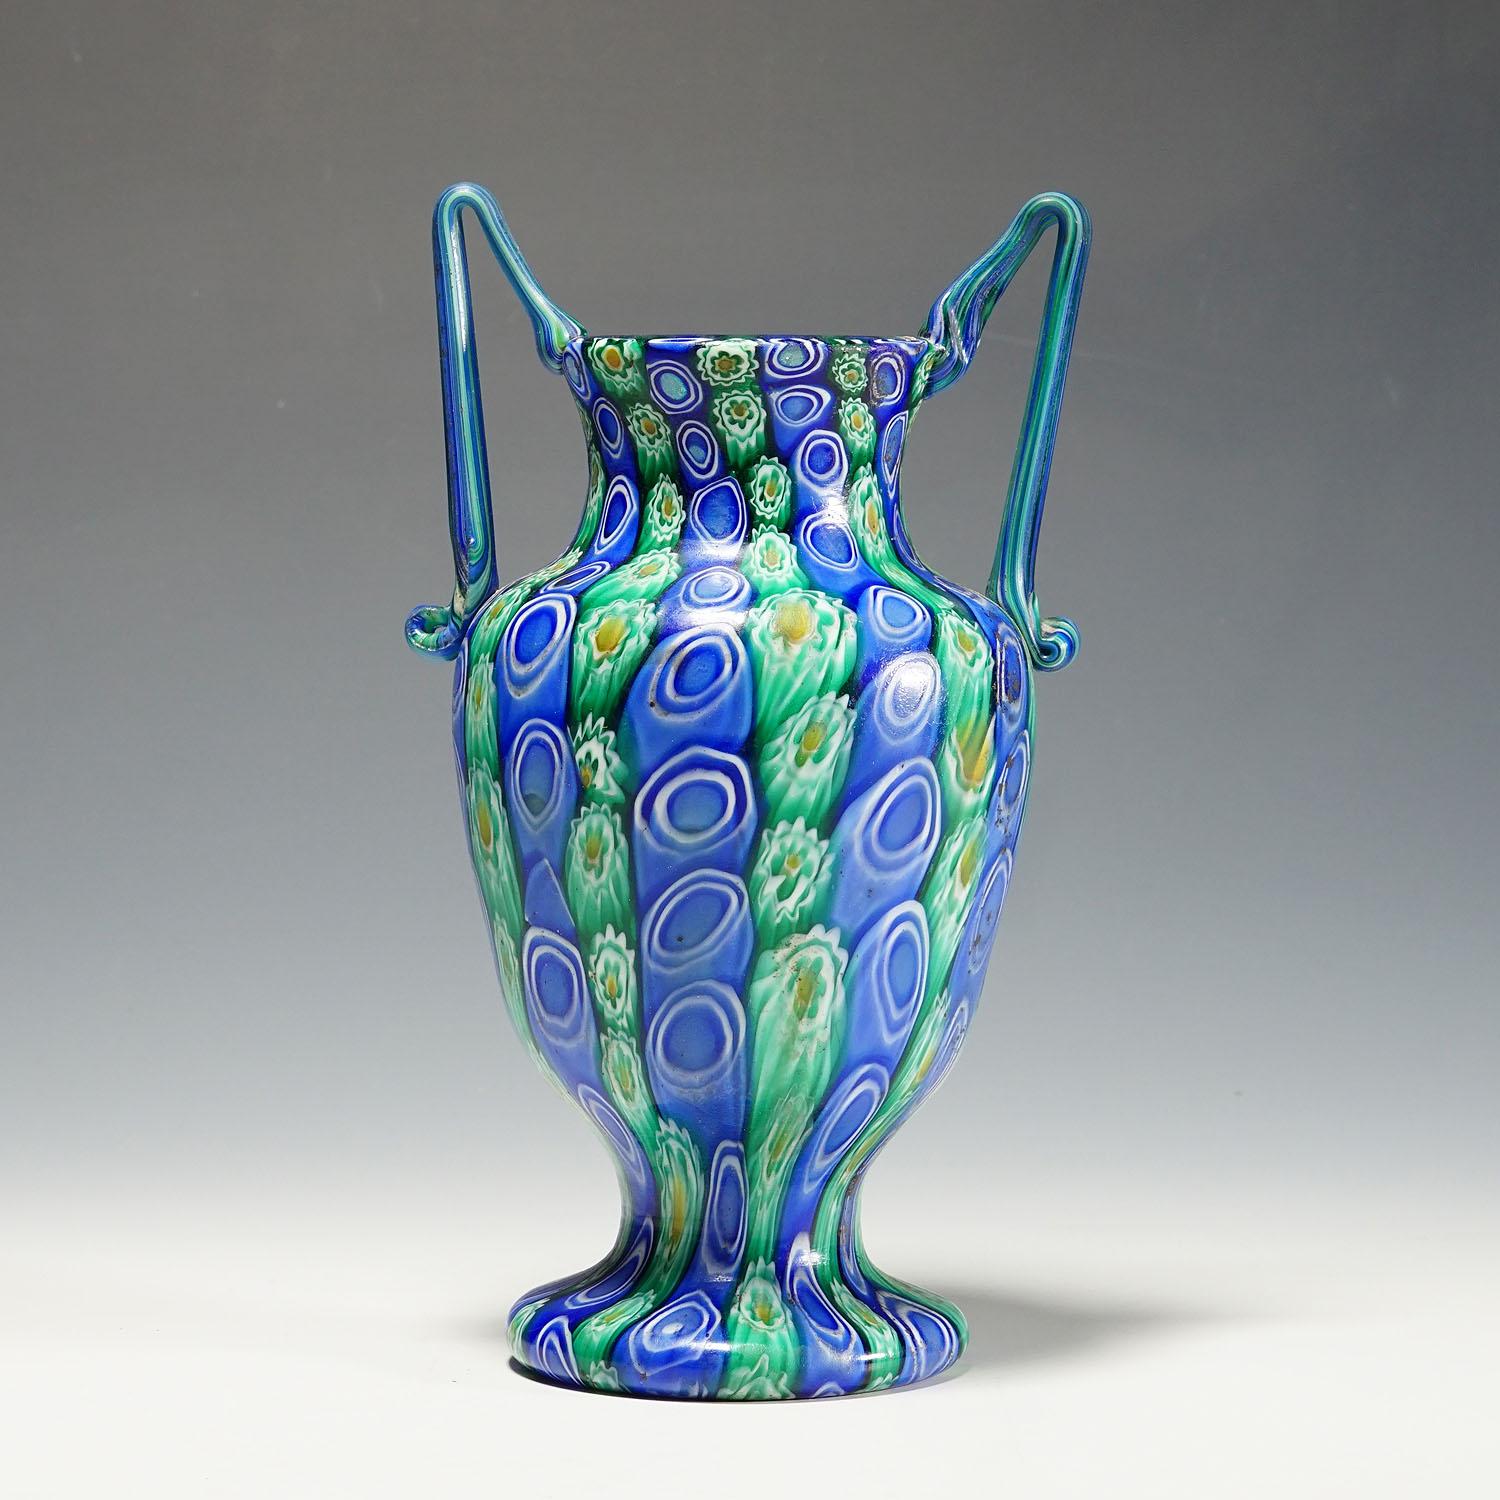 Große antike Millefiori-Vase mit Henkeln, Fratelli Toso Murano um 1910

Eine große und seltene Vase aus Millefiori-Murringlas, hergestellt von Vetreria Fratelli Toso, Murano um 1910. Hergestellt aus polykromen Murrinen (blau, grün, gelb und weiß),